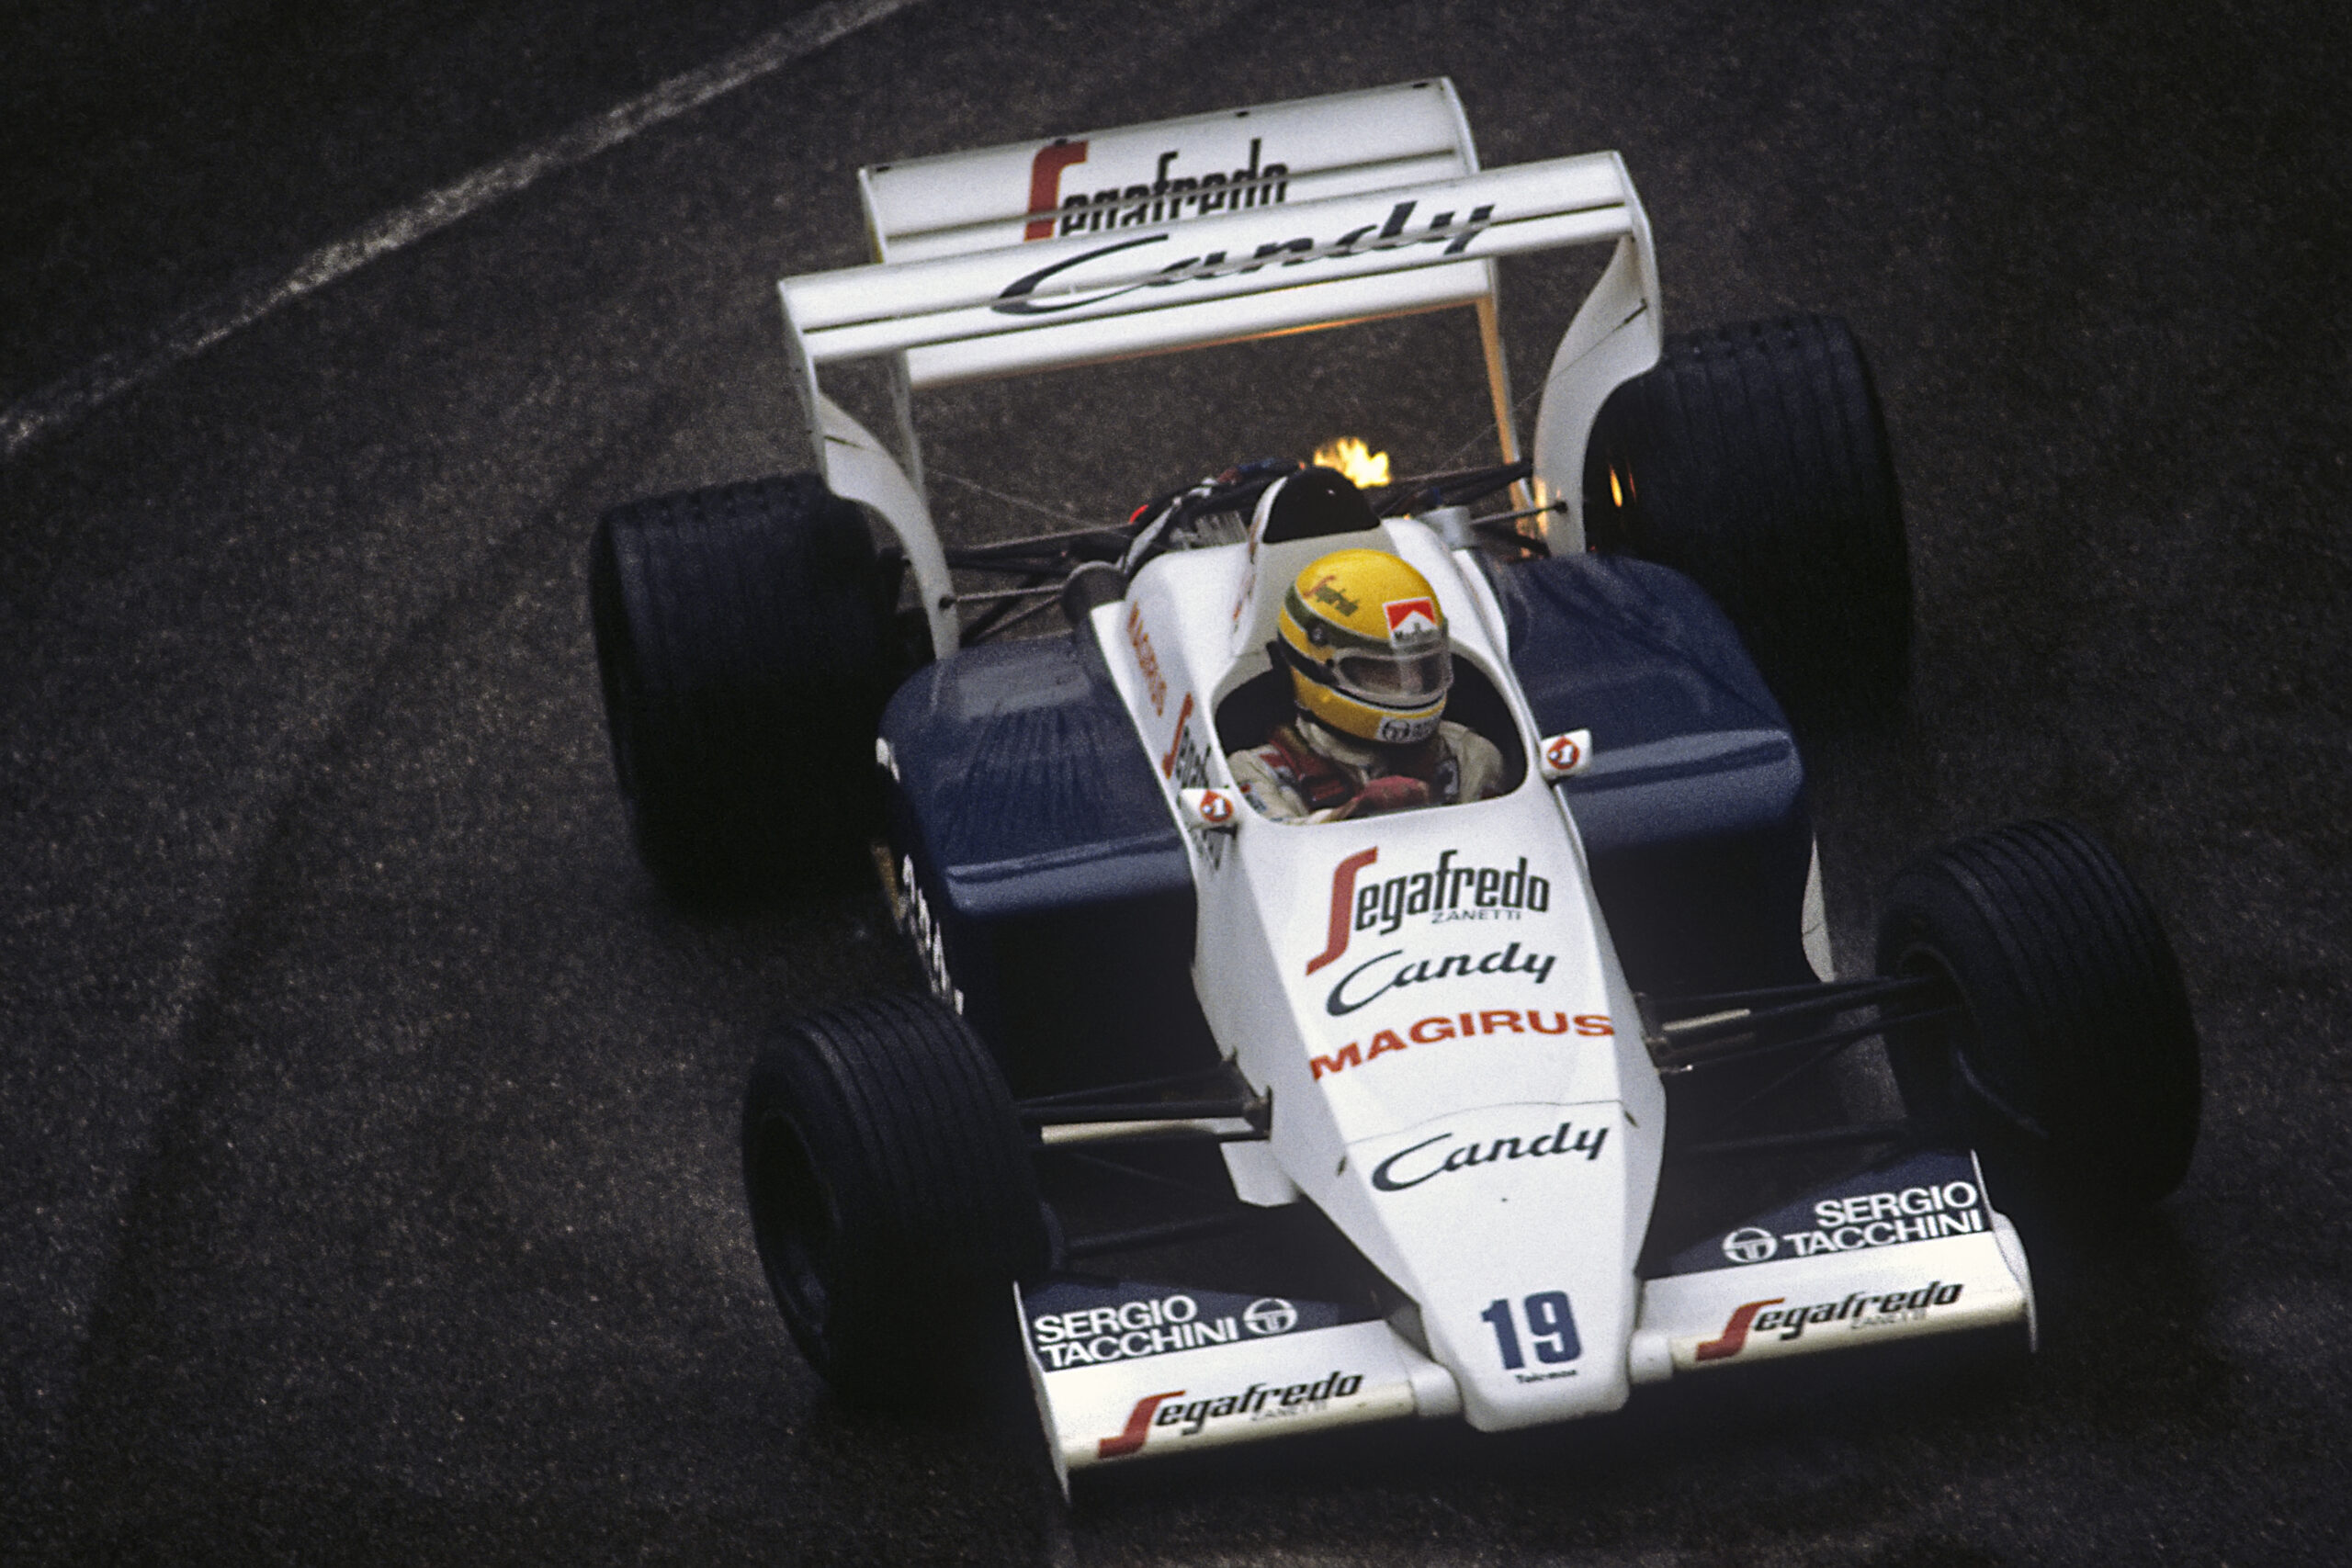 Ayrton Senna's Formula 1 cars: McLaren MP4/4, Lotus 97T and more